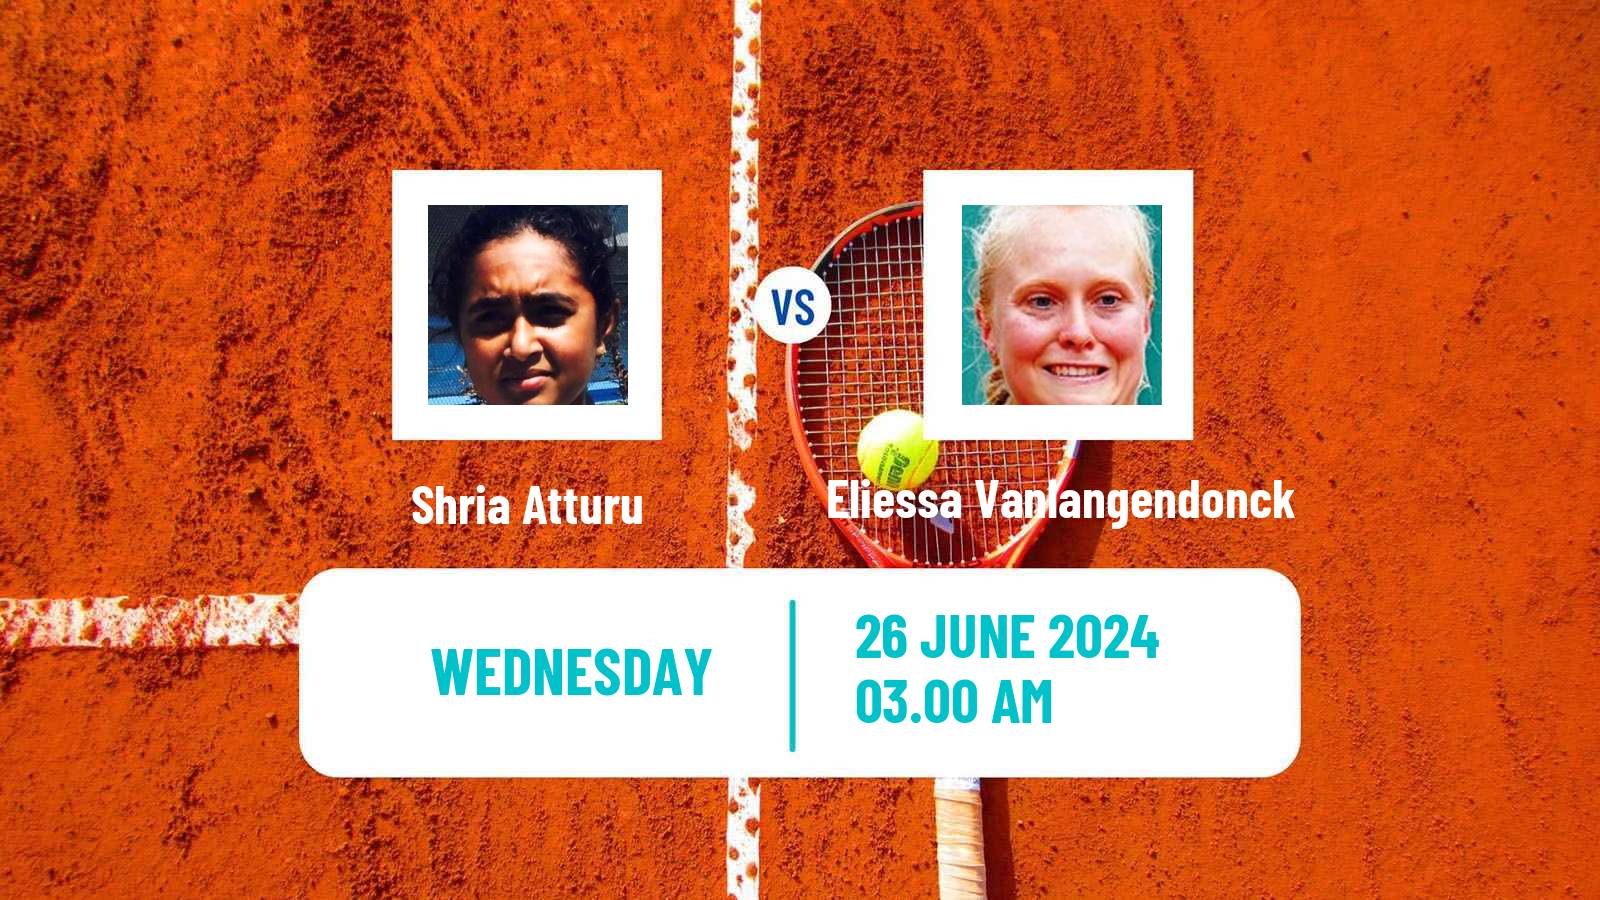 Tennis ITF W15 Hillcrest 2 Women Shria Atturu - Eliessa Vanlangendonck